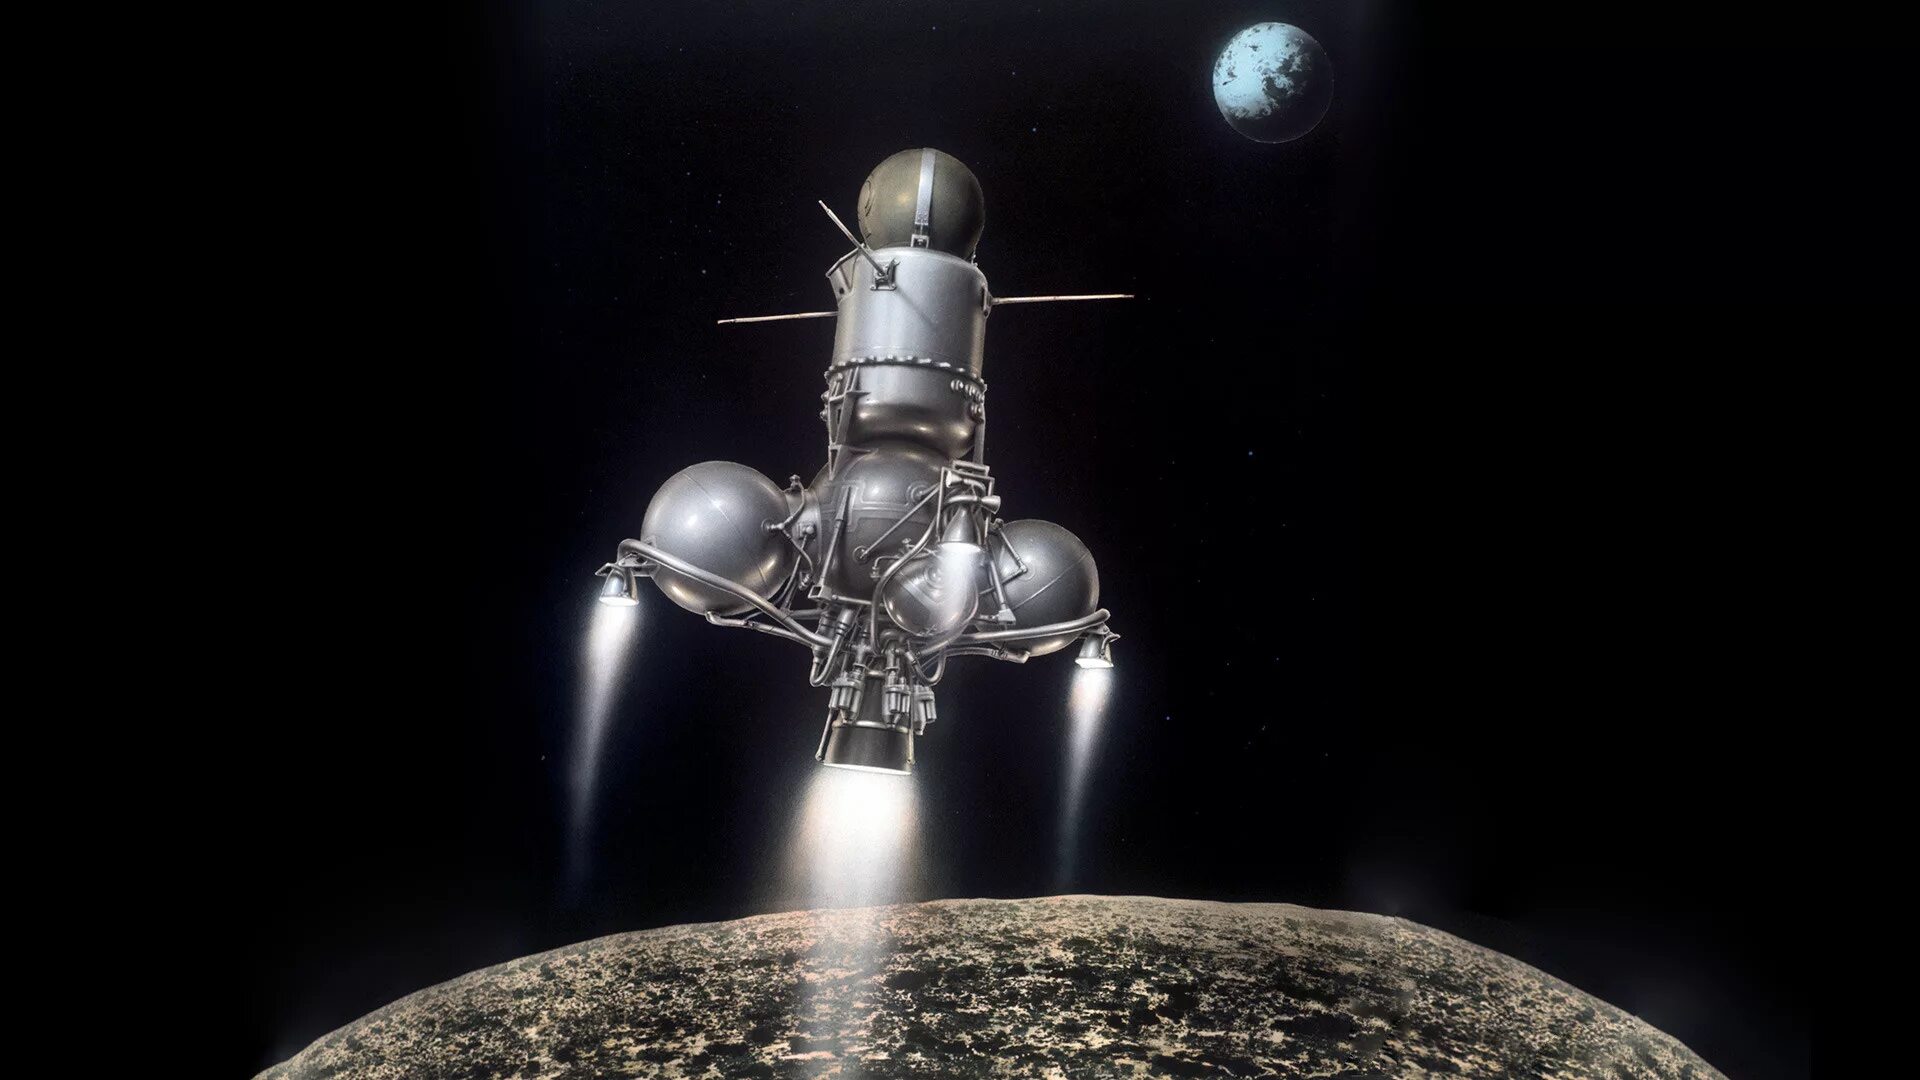 Луна-16 автоматическая межпланетная станция. Луна-15 автоматическая межпланетная станция. Советская автоматическая межпланетная станция "Луна-24". 1970 Межпланетная станция «Луна-16» доставила на землю лунный грунт.